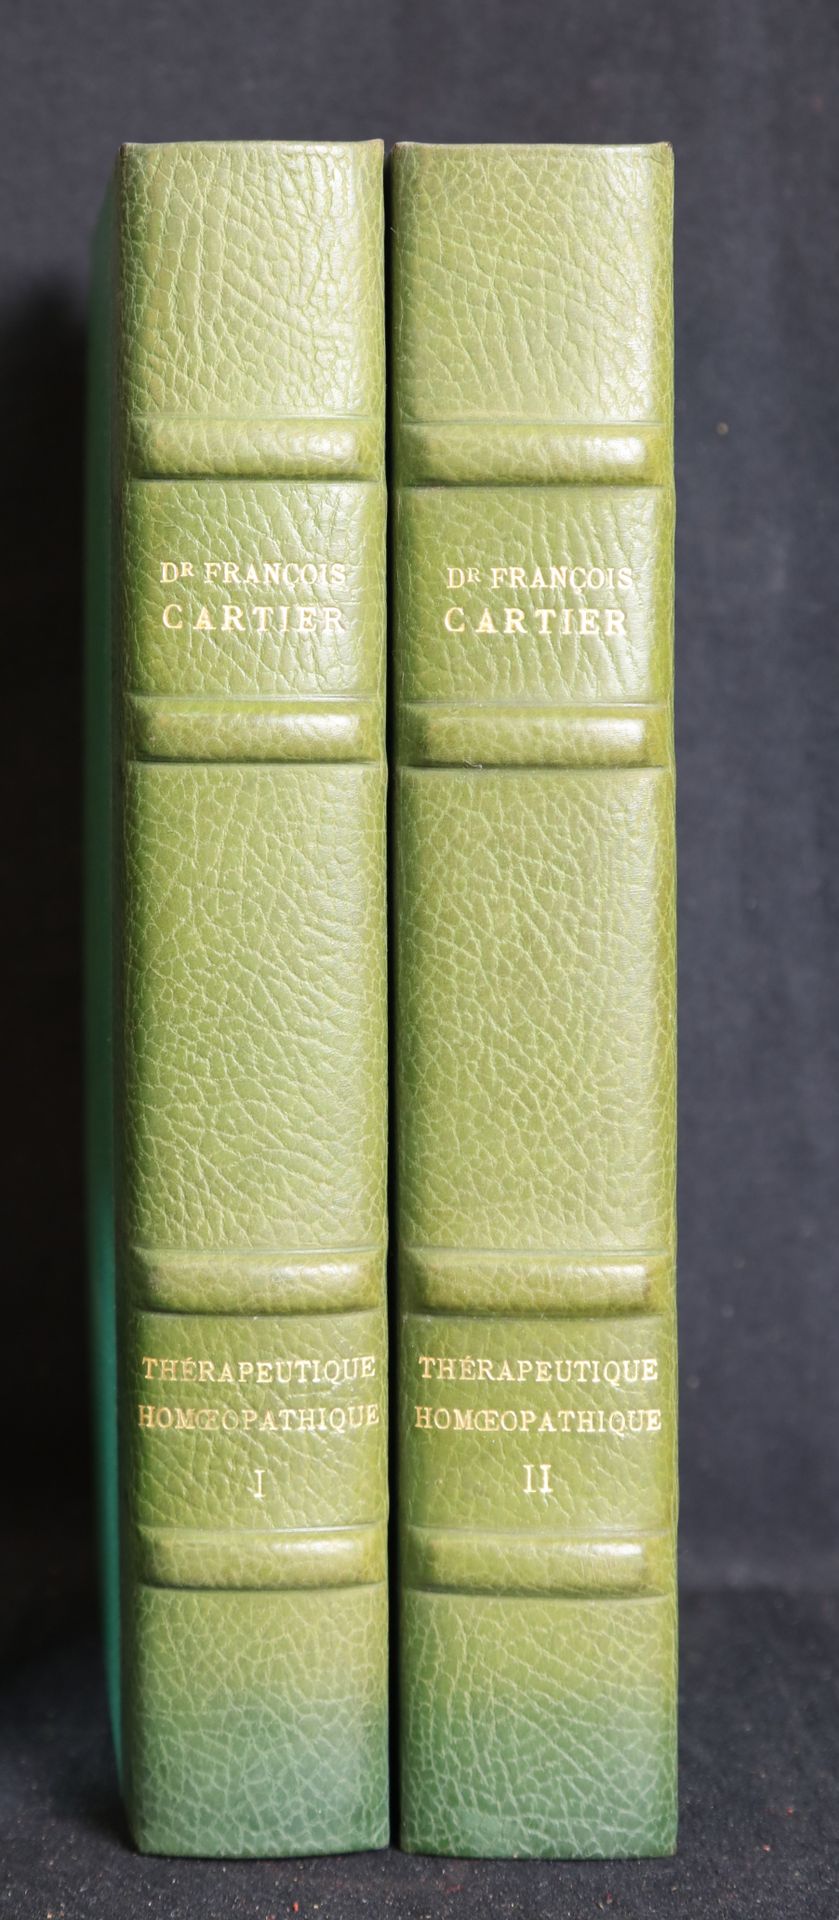 Null CARTIER F. Dc, terapéutica homeopática I y II (volúmenes)